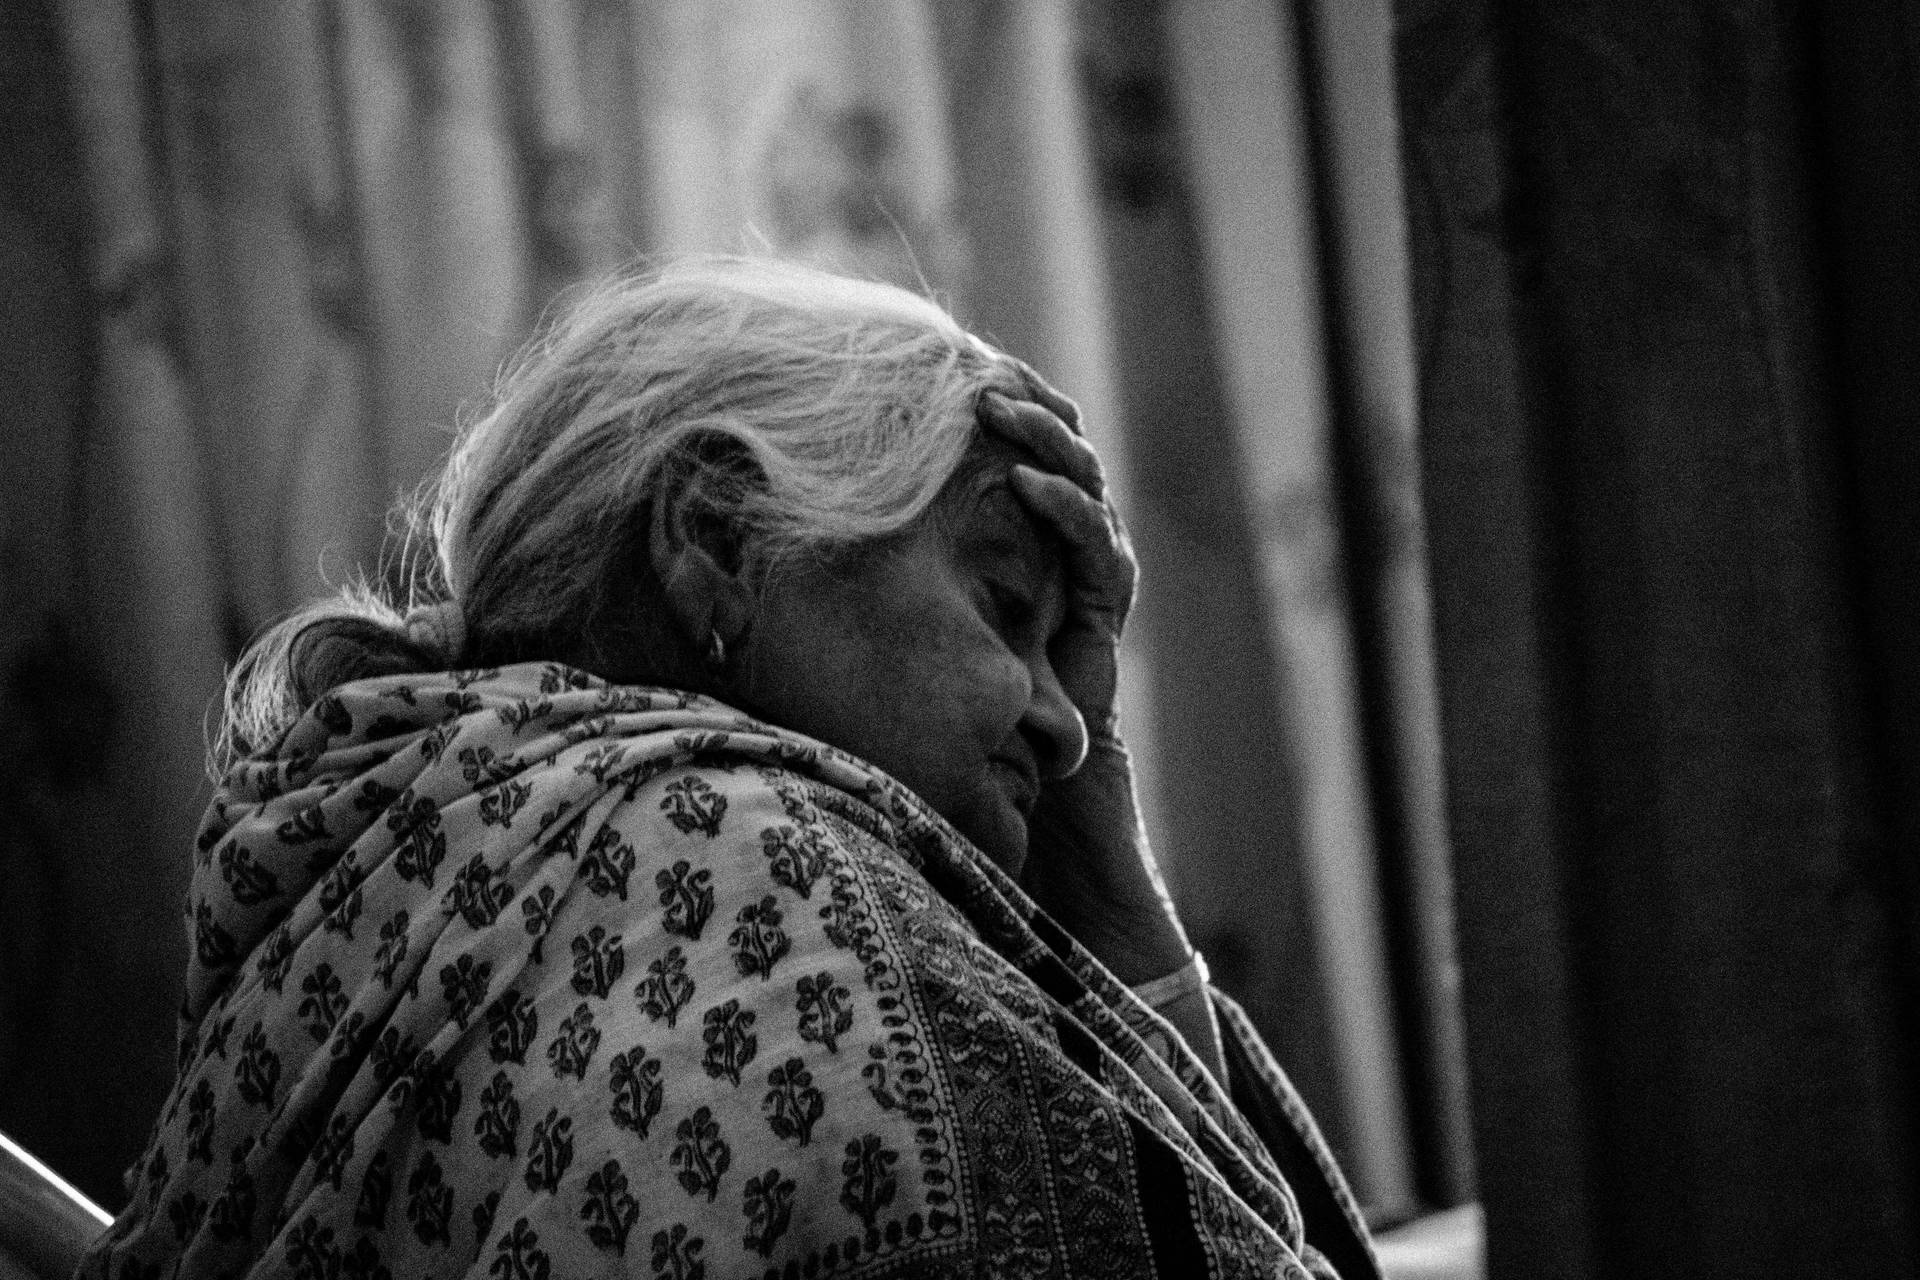 Elderly Woman In Distressed Wallpaper